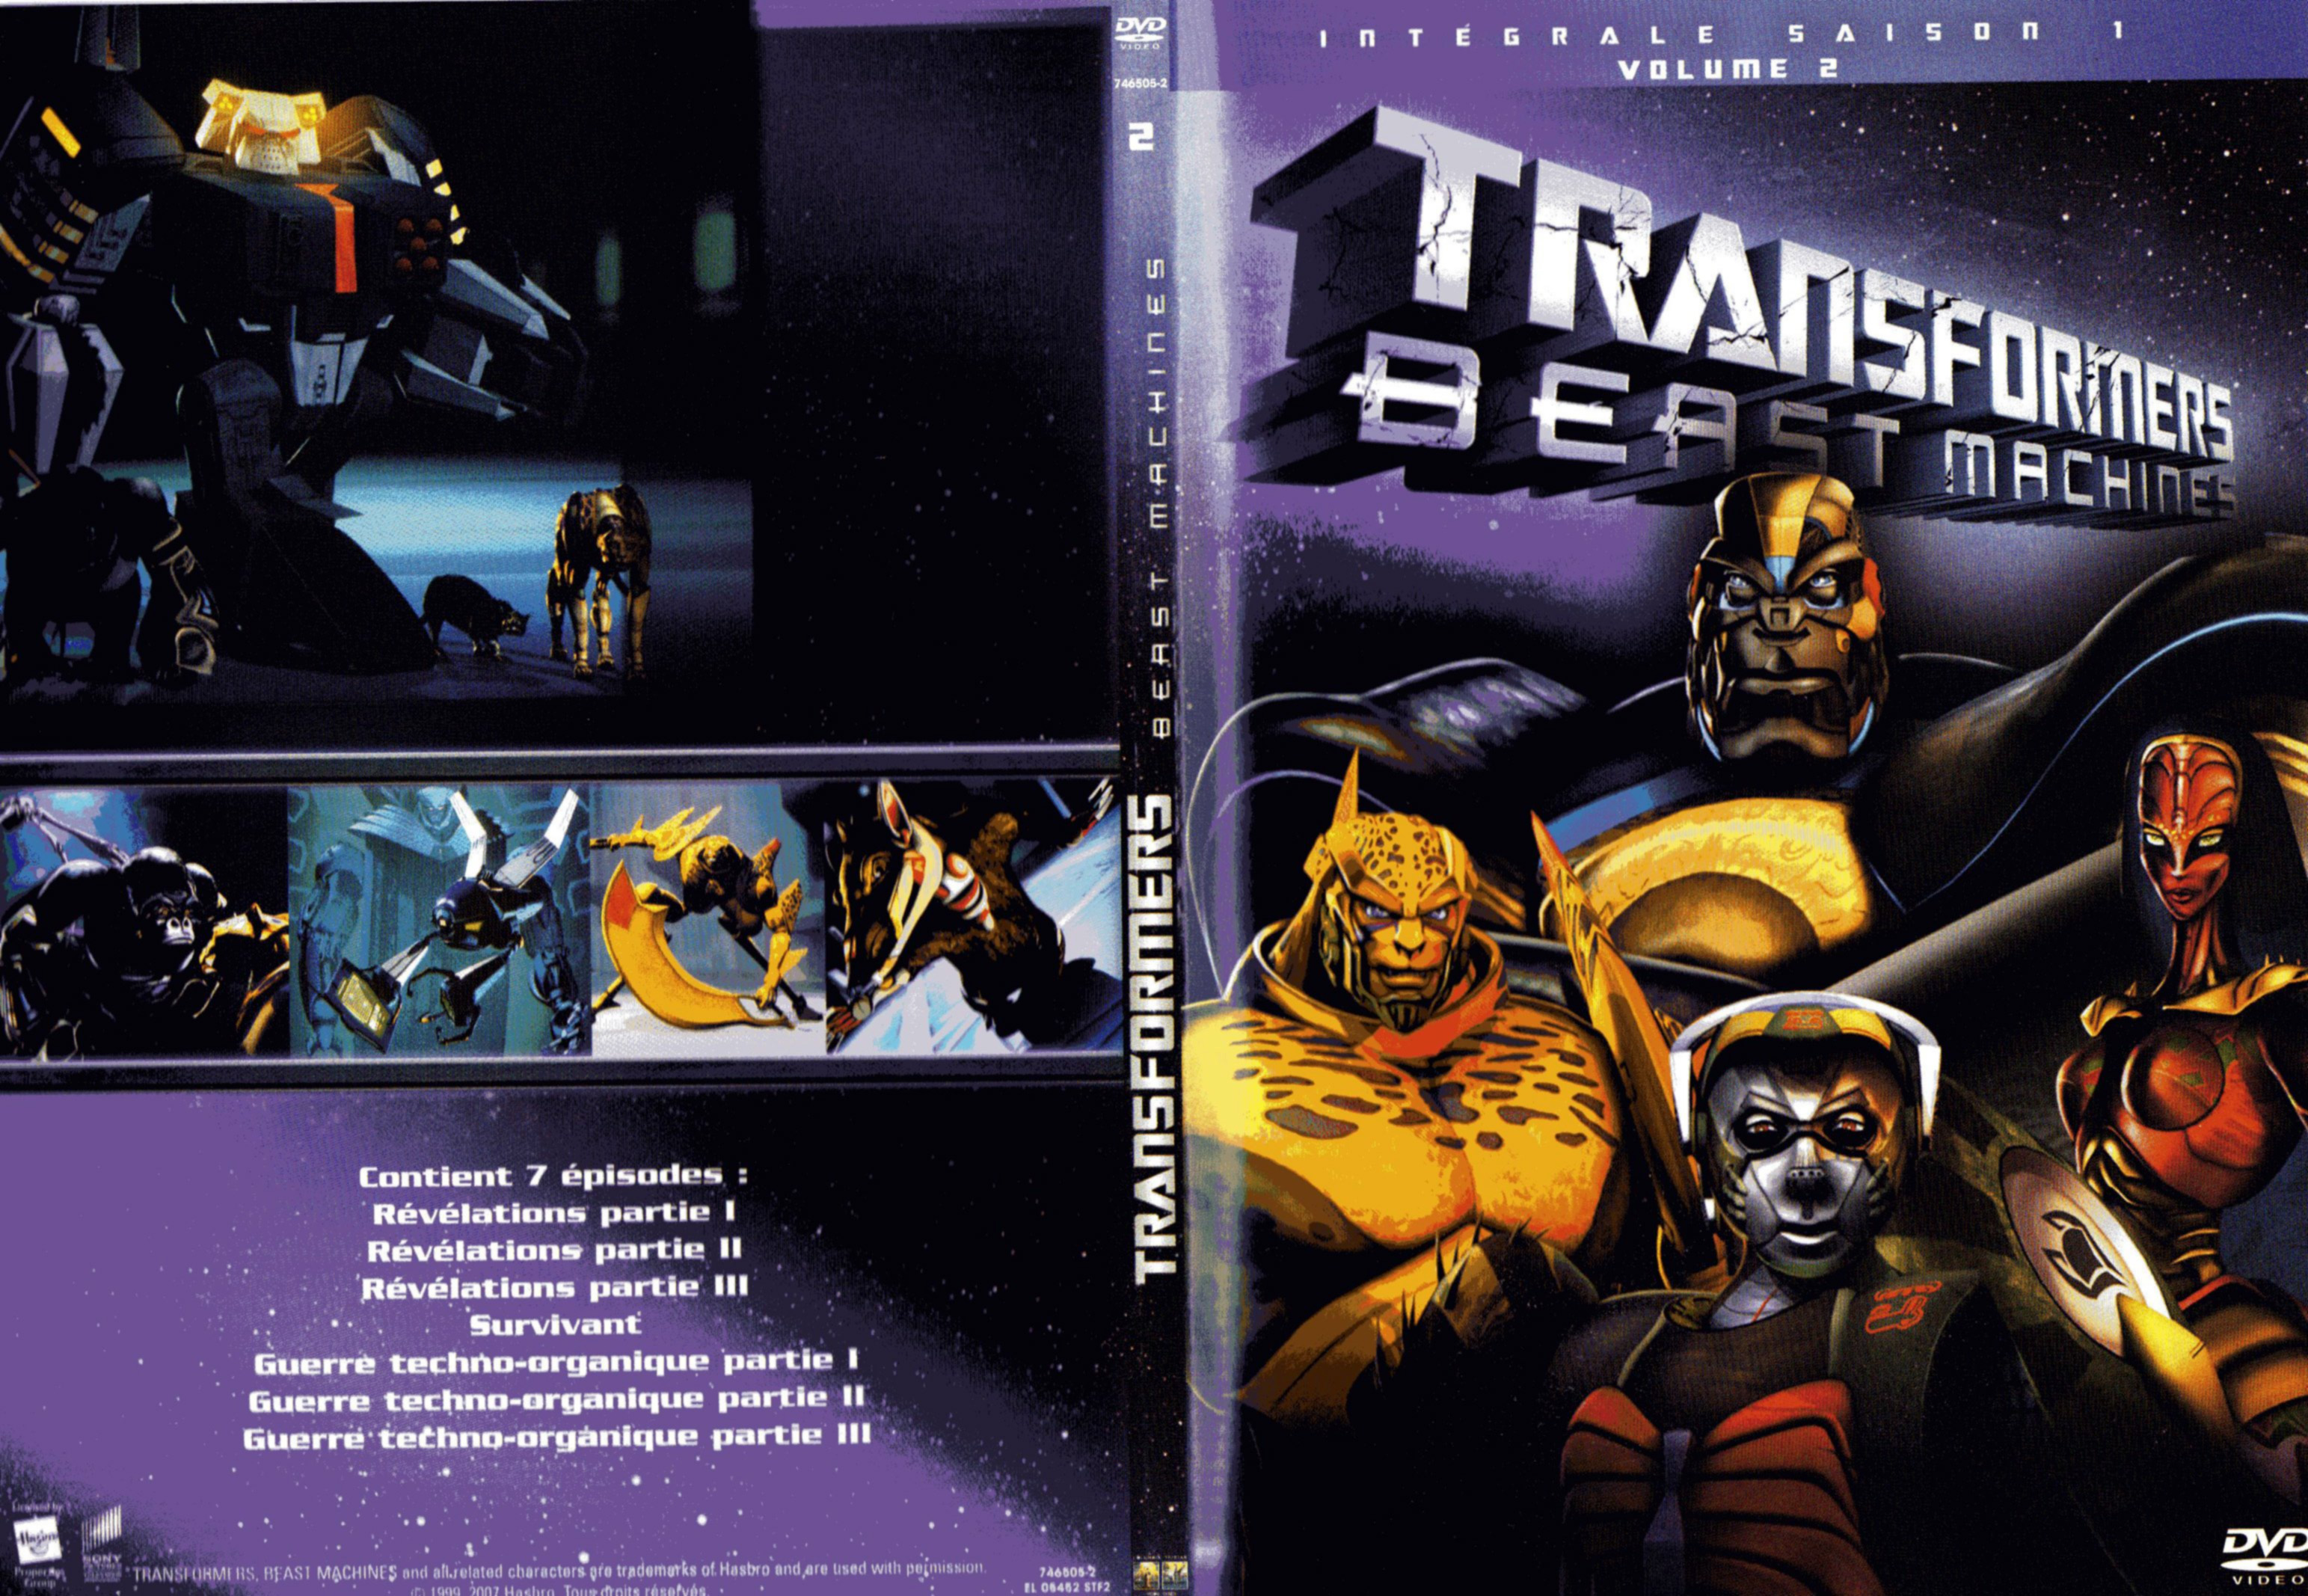 Jaquette DVD Transformers beast machine Saison 1 DVD 2